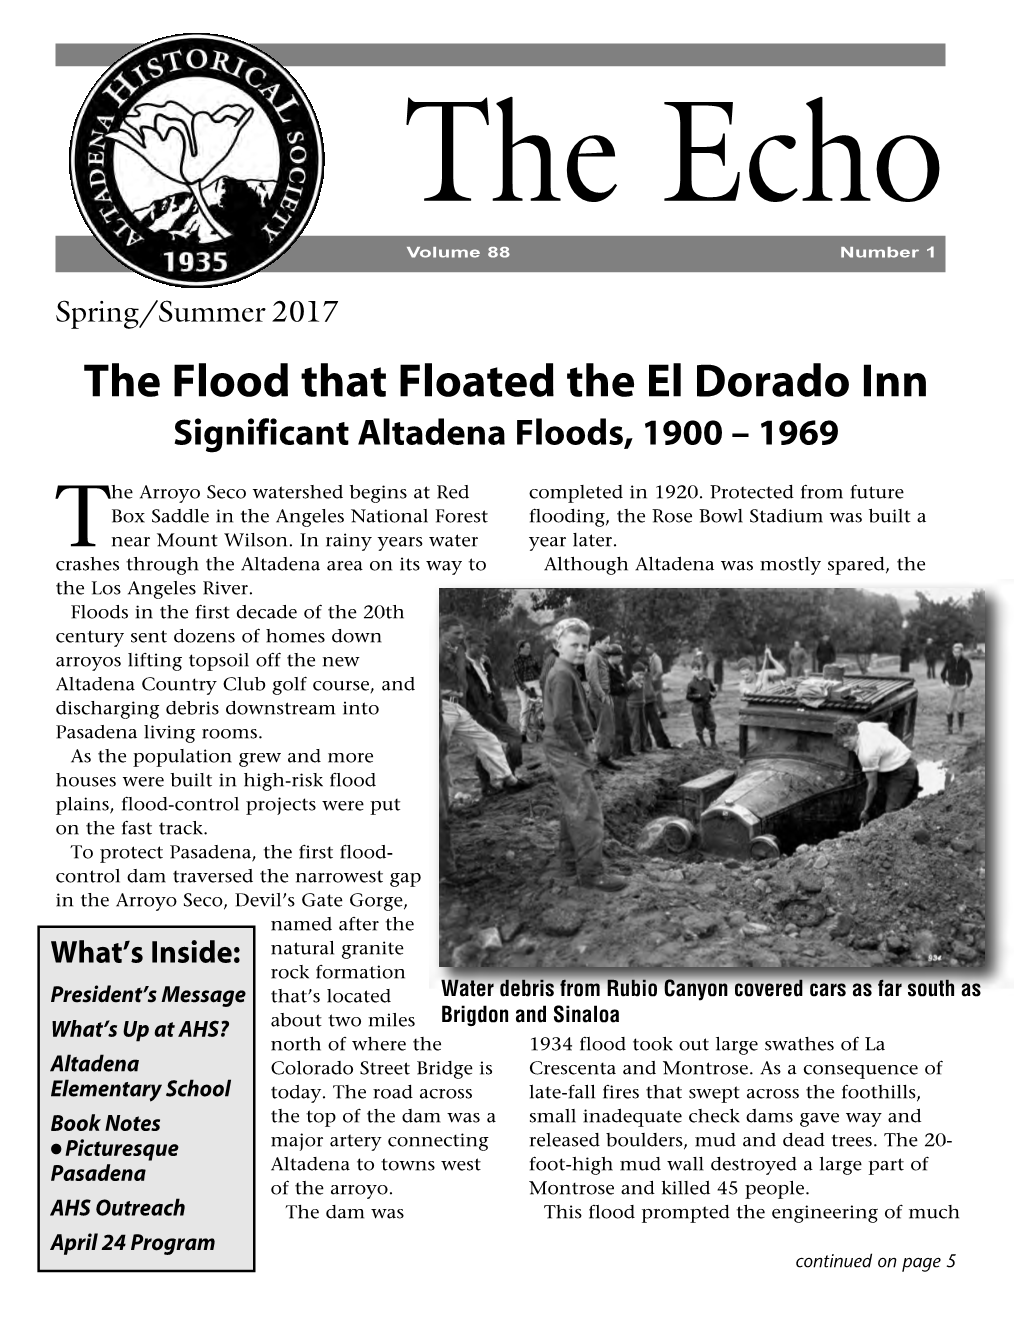 The Flood That Floated the El Dorado Inn Significant Altadena Floods, 1900 – 1969